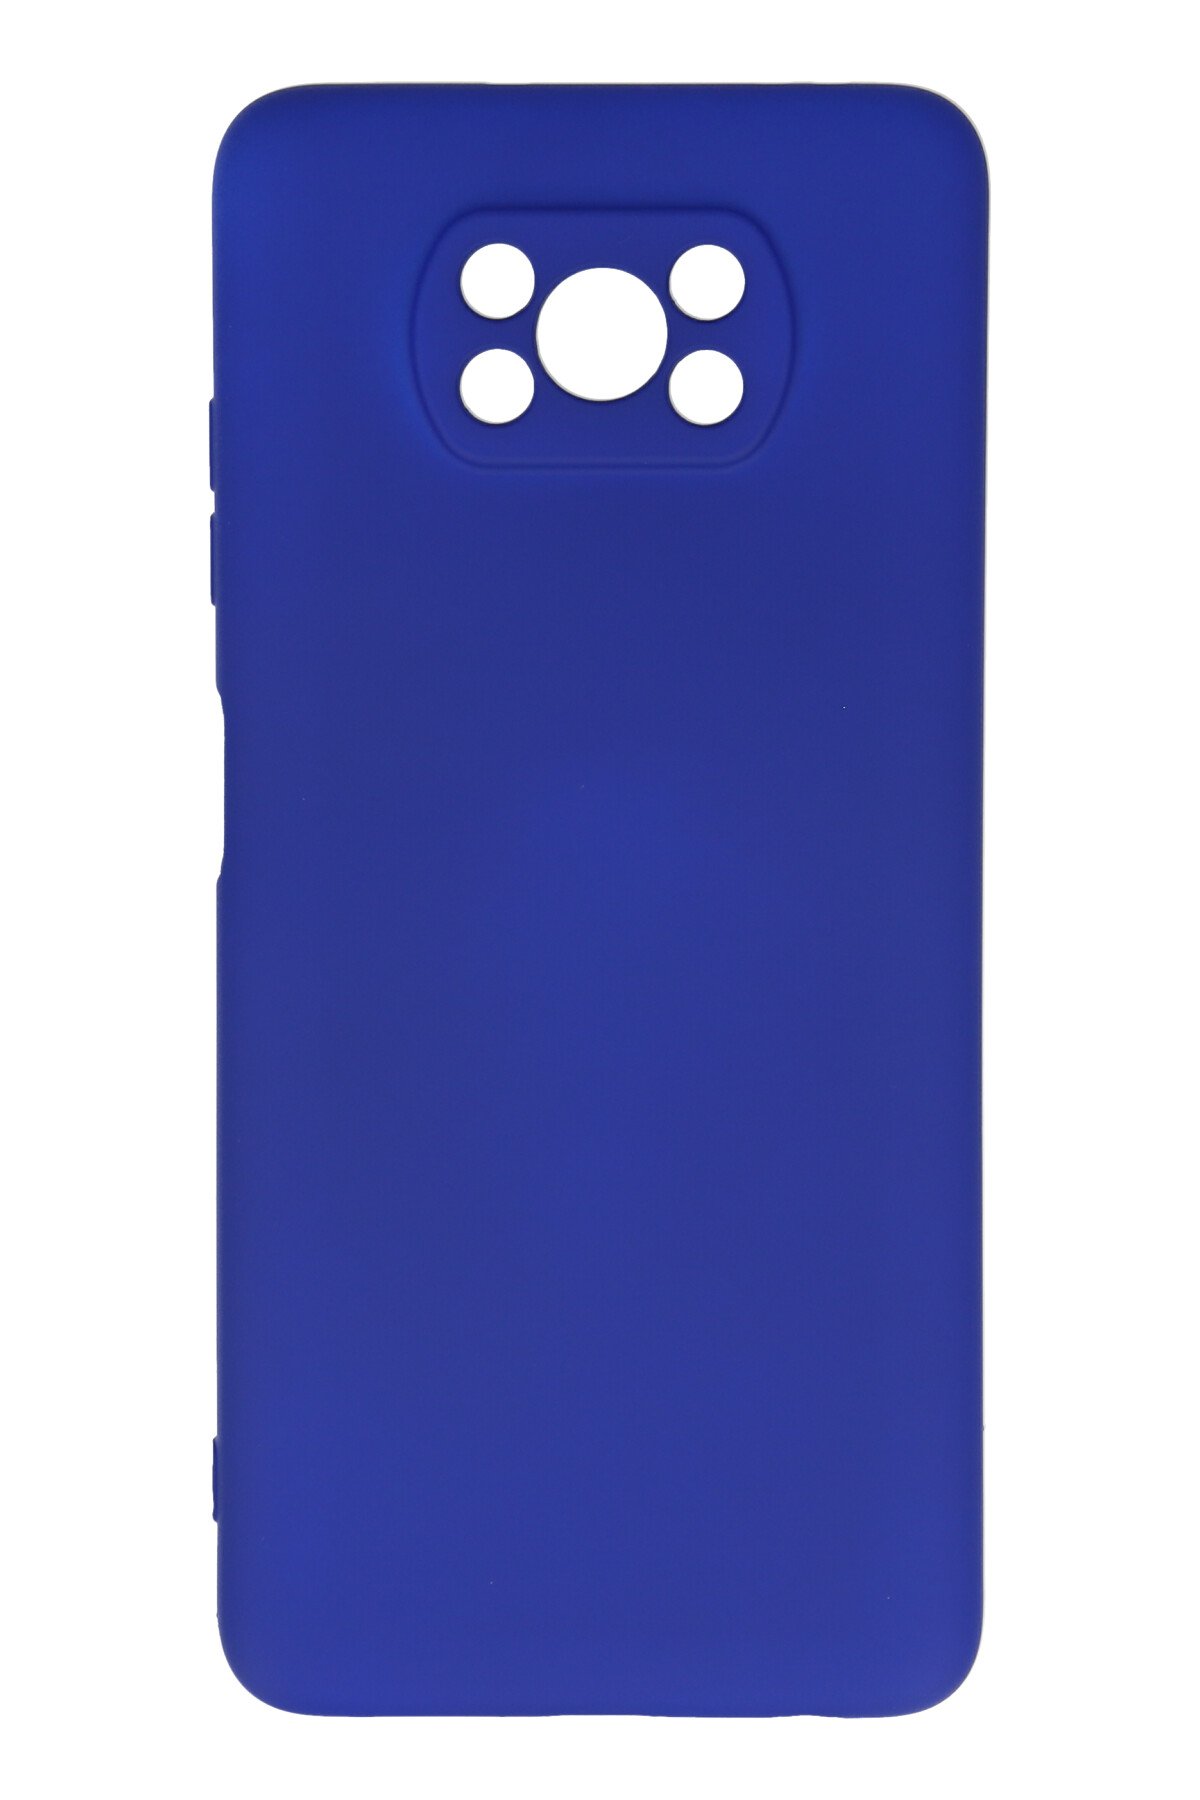 Newface Xiaomi Pocophone X3 Kılıf Platin Silikon - Mavi